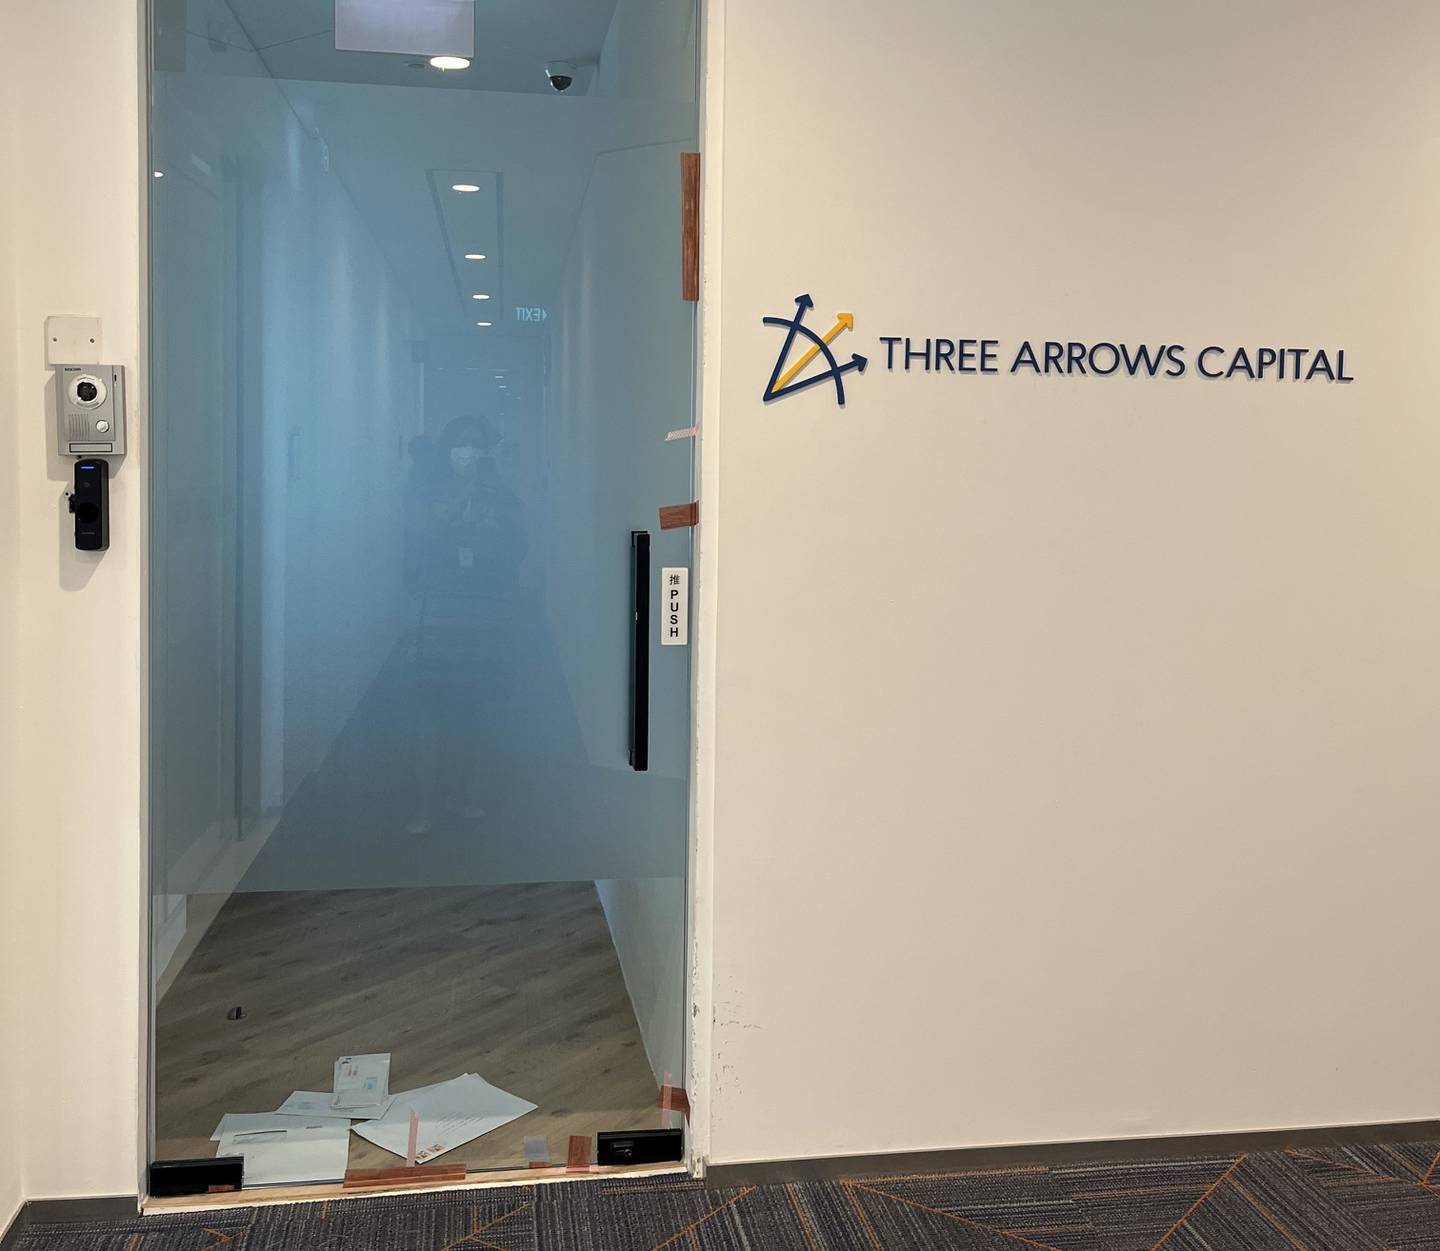 Oficina de Three Arrows Capital en Singapur.